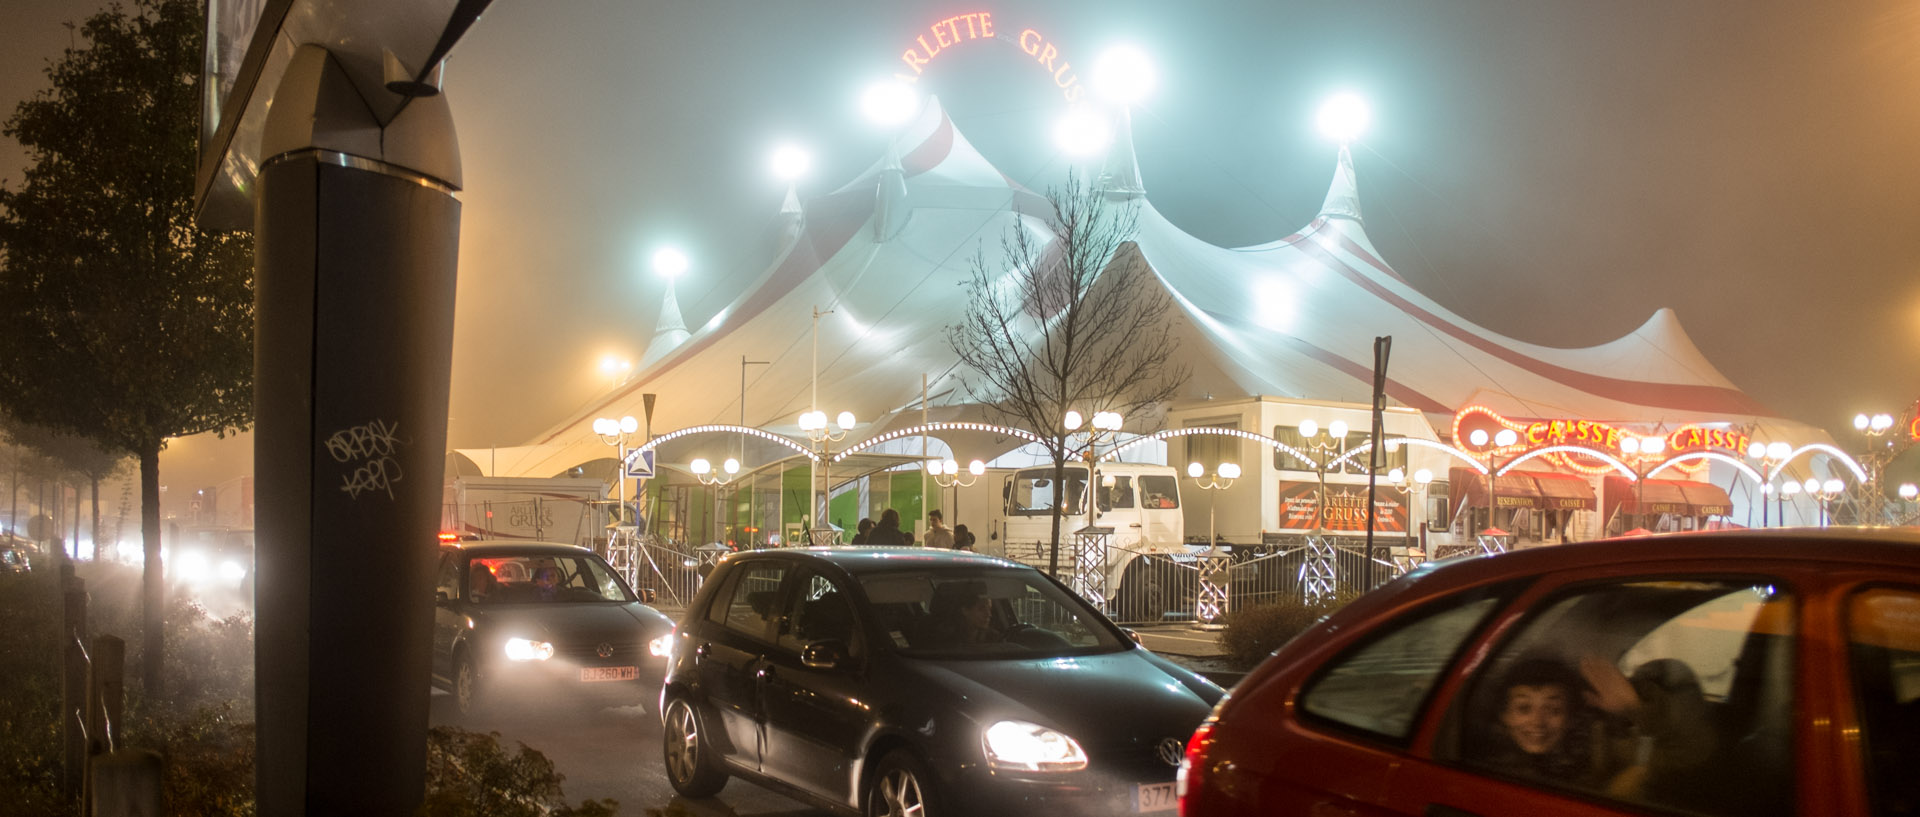 Samedi 16 novembre 2013, 20:04, cirque Arlette Gruss, parking d'un centre commercial, Wasquehal